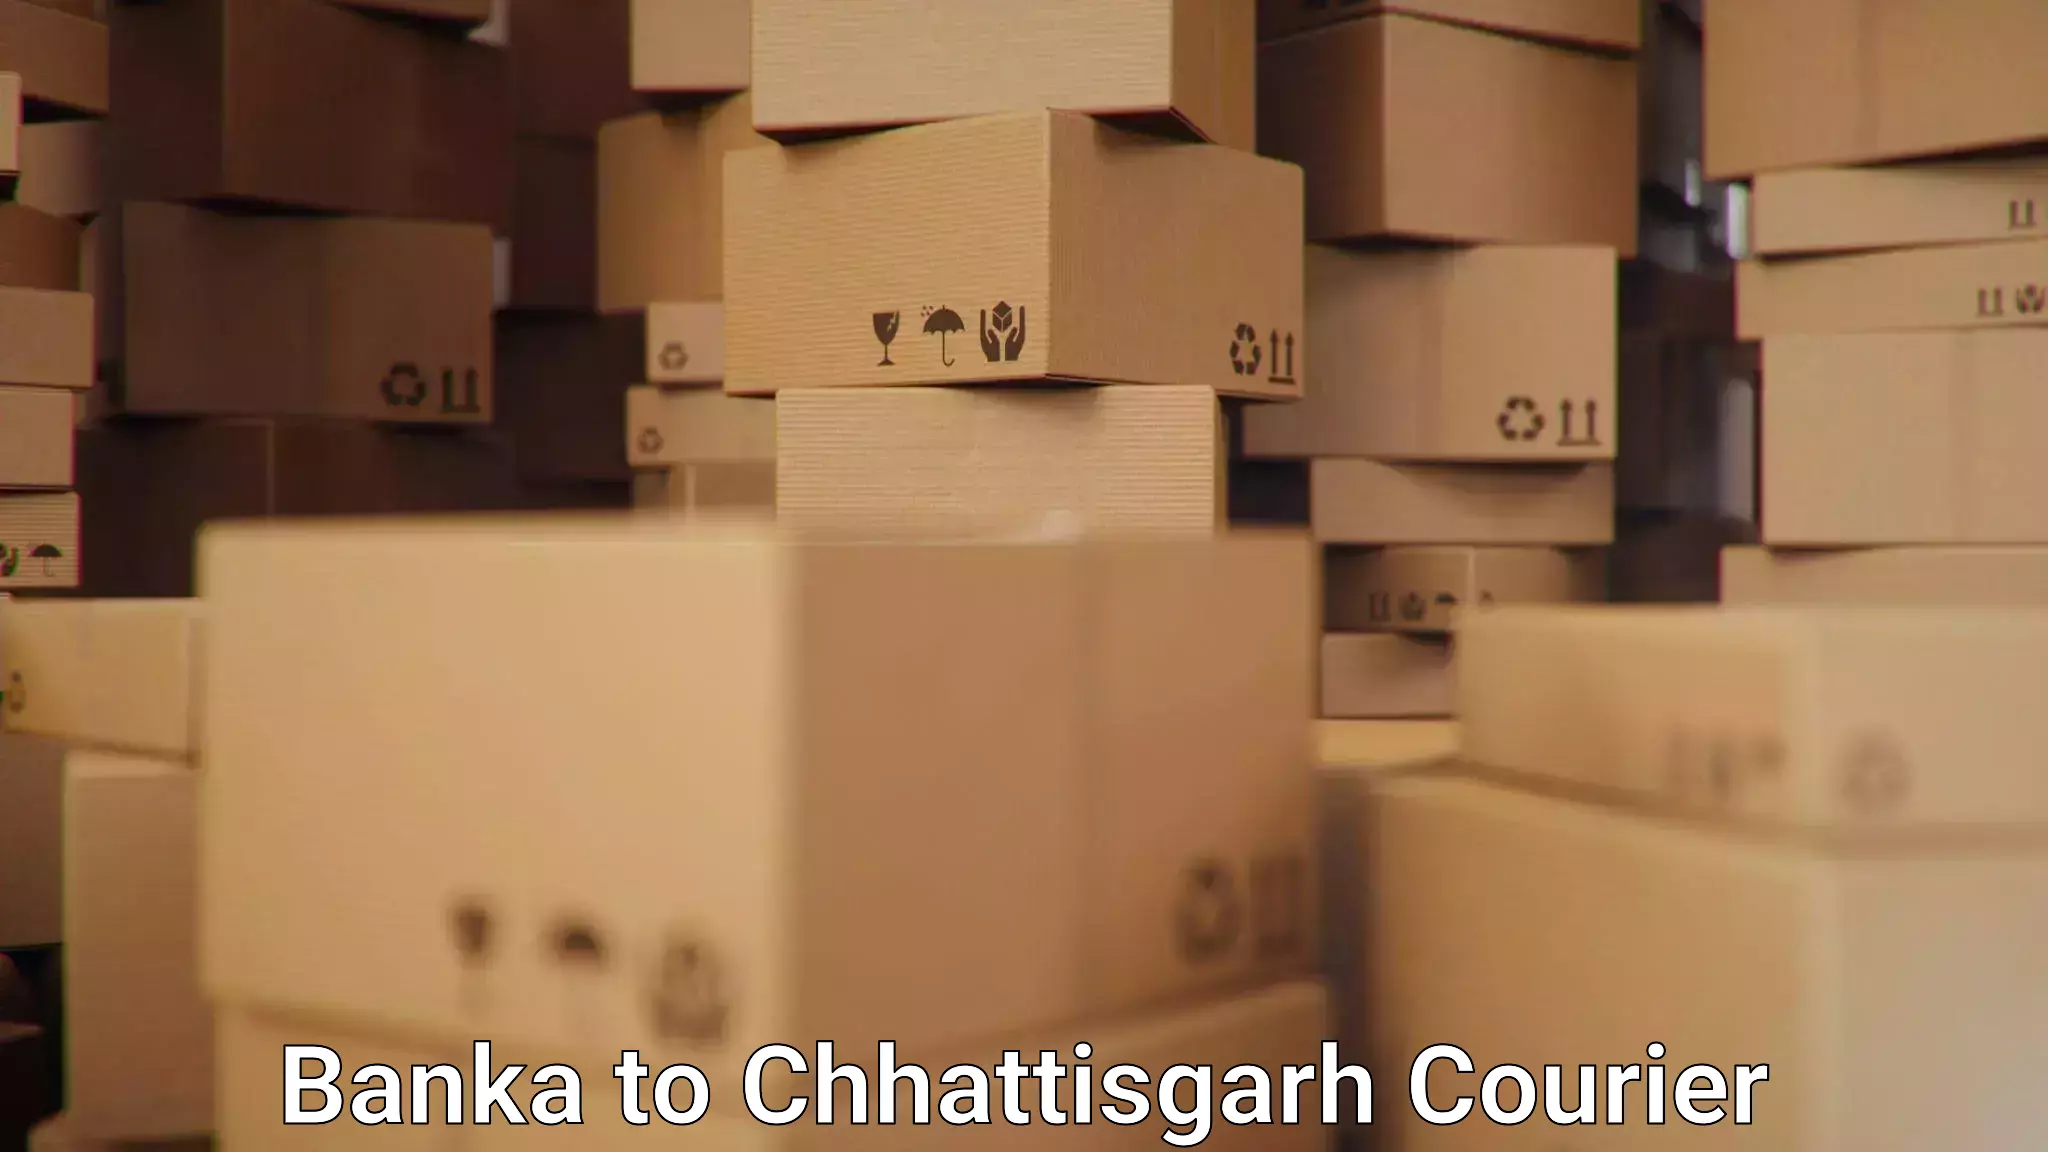 Local delivery service Banka to Chhattisgarh